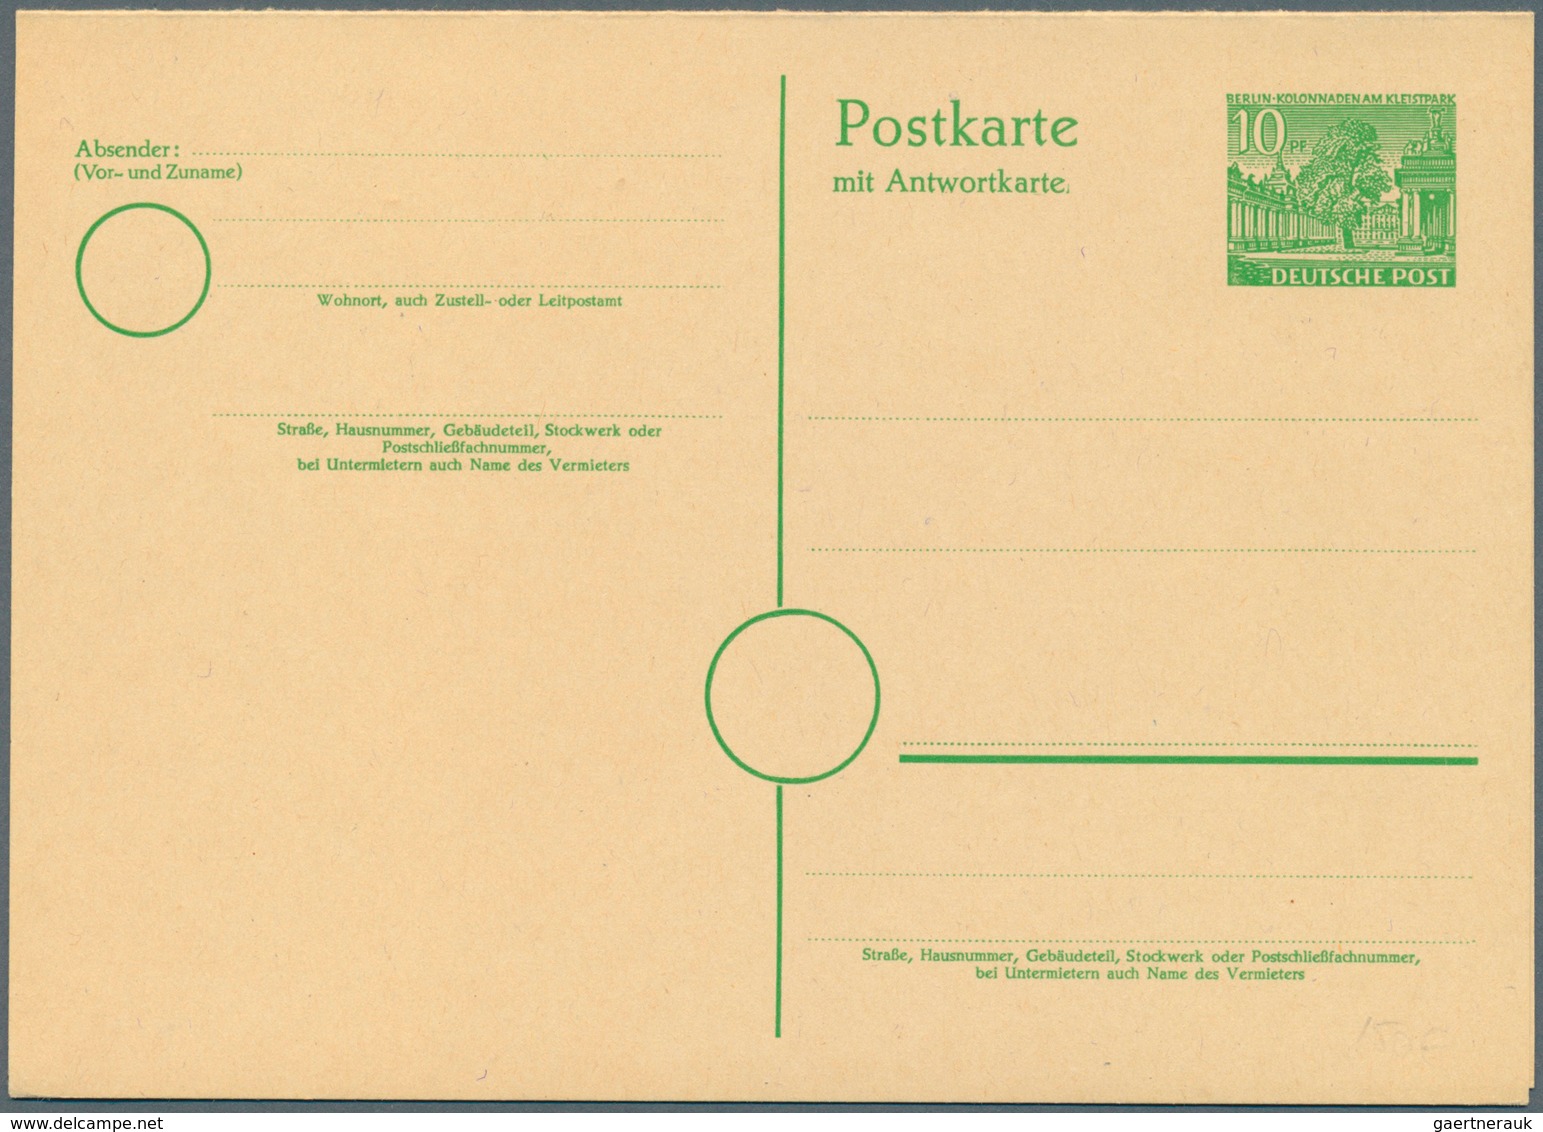 Berlin - Ganzsachen: 1948/1967. Spannende Sammlung von 109 nur versch. POSTKARTEN, oft doppelt gesam